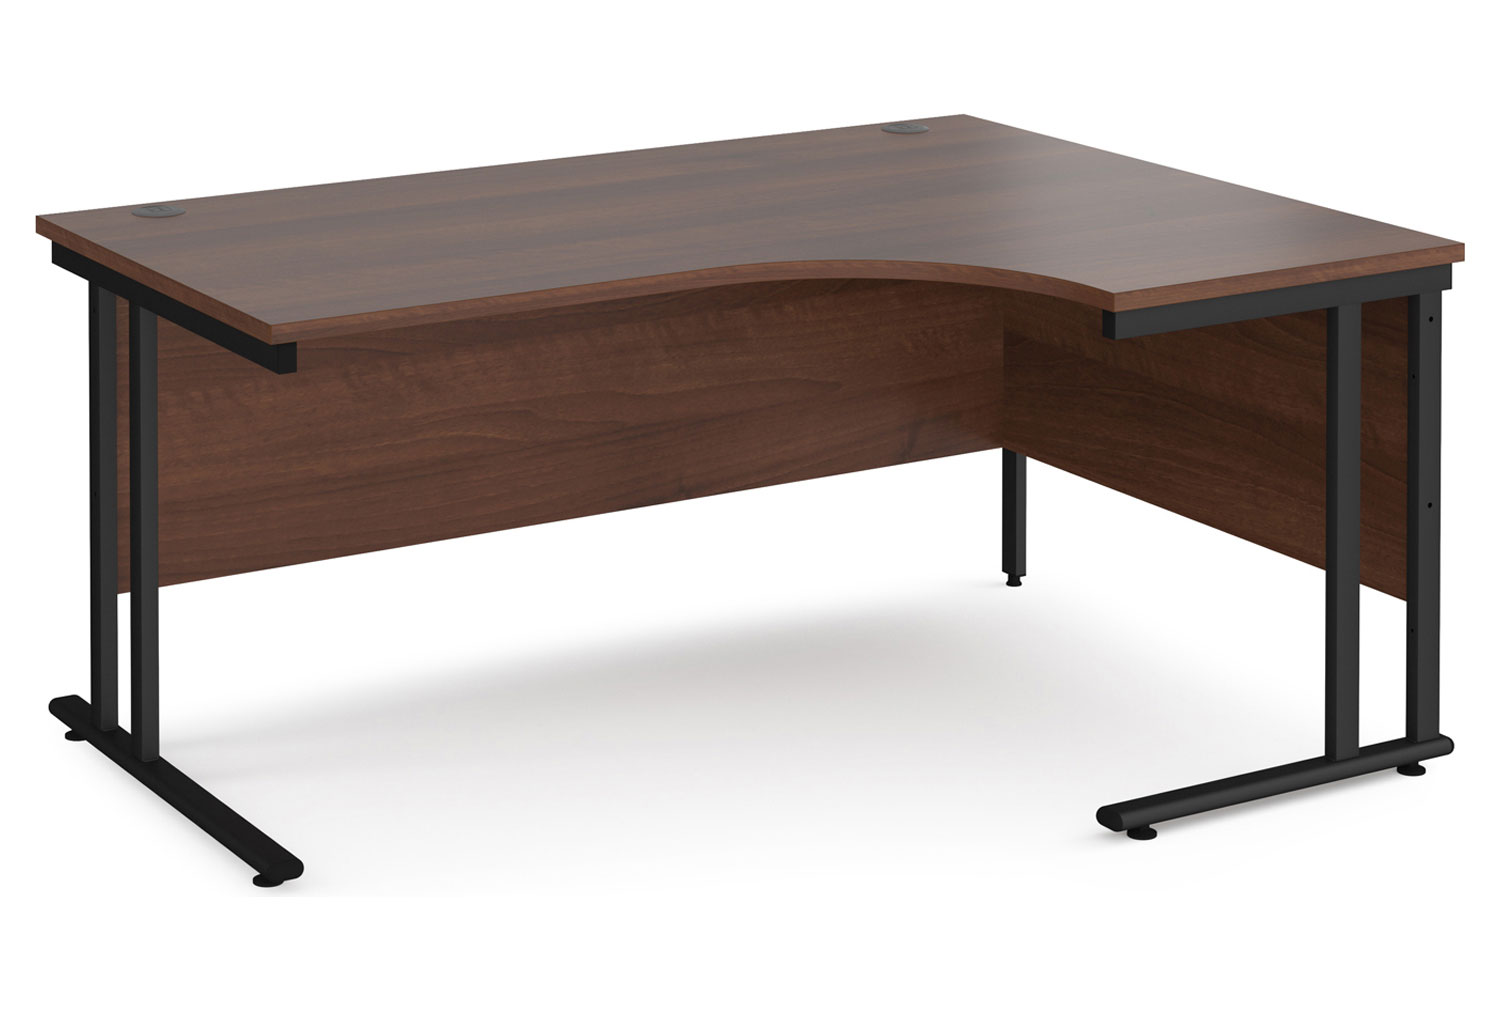 Value Line Deluxe C-Leg Right Hand Ergonomic Office Desk (Black Legs), 160wx120/80dx73h (cm), Walnut, Fully Installed